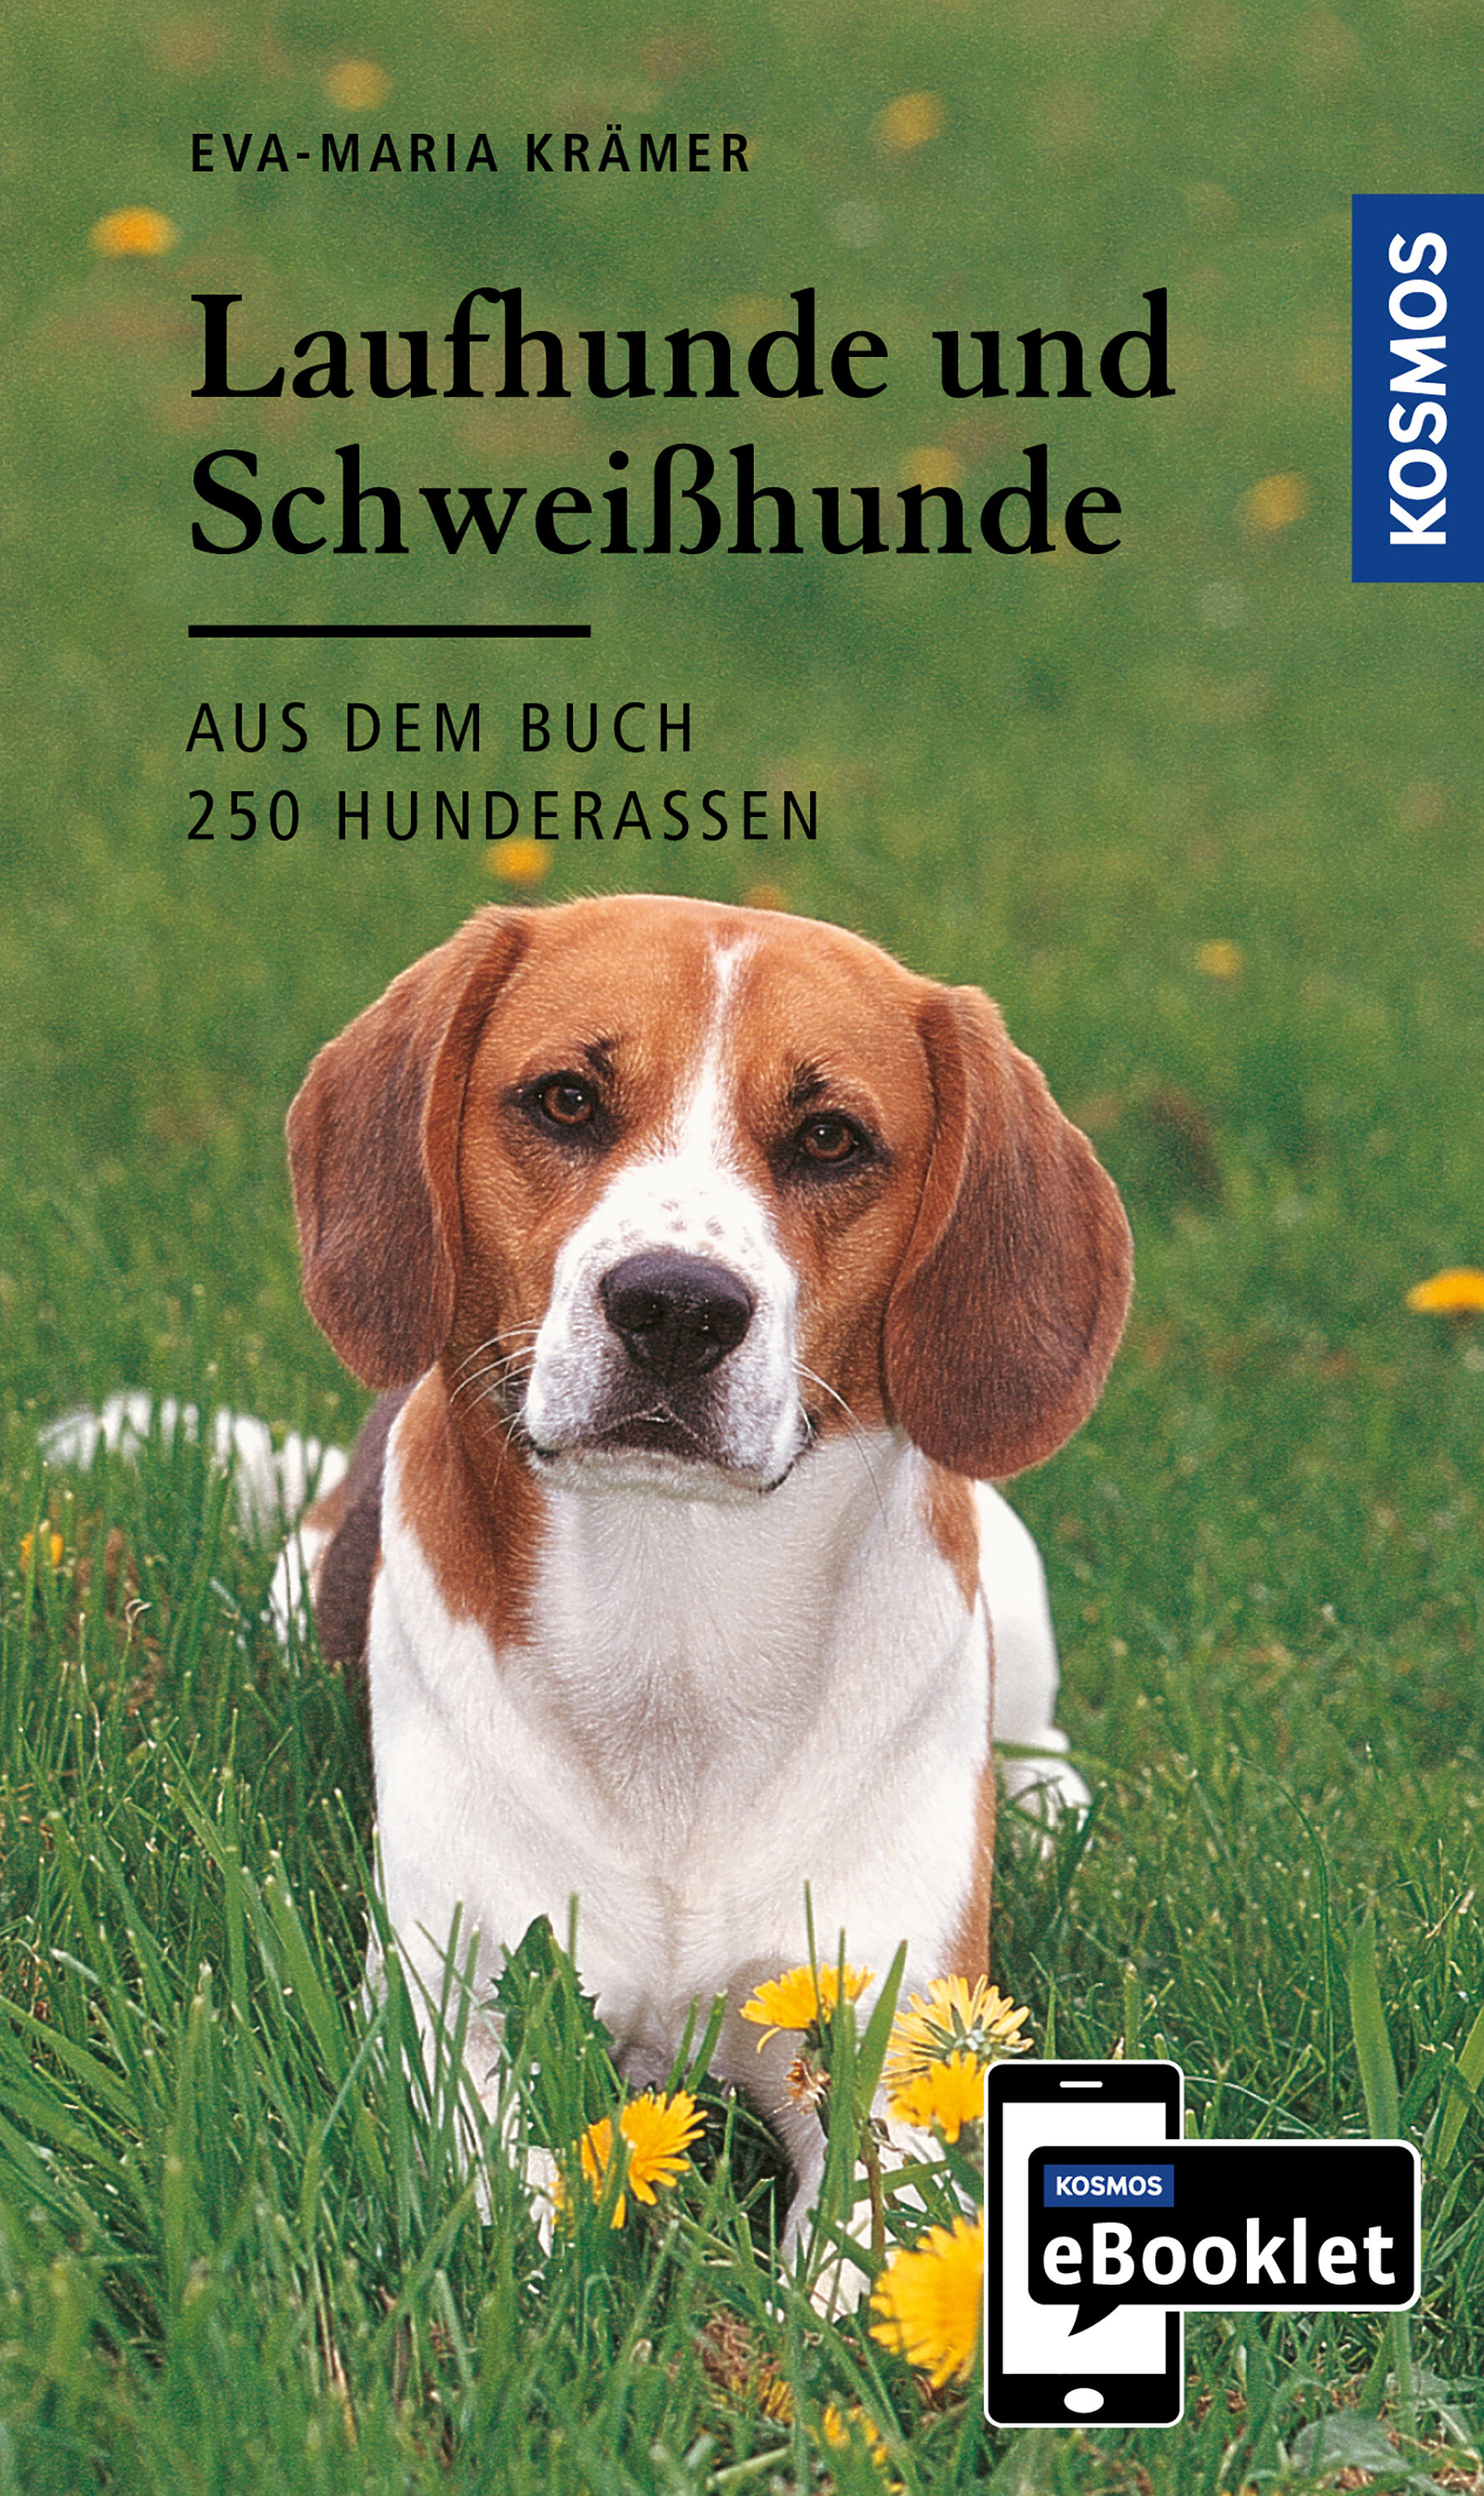 KOSMOS eBooklet: Laufhunde und Schweißhunde - Ursprung  Wesen  Haltung